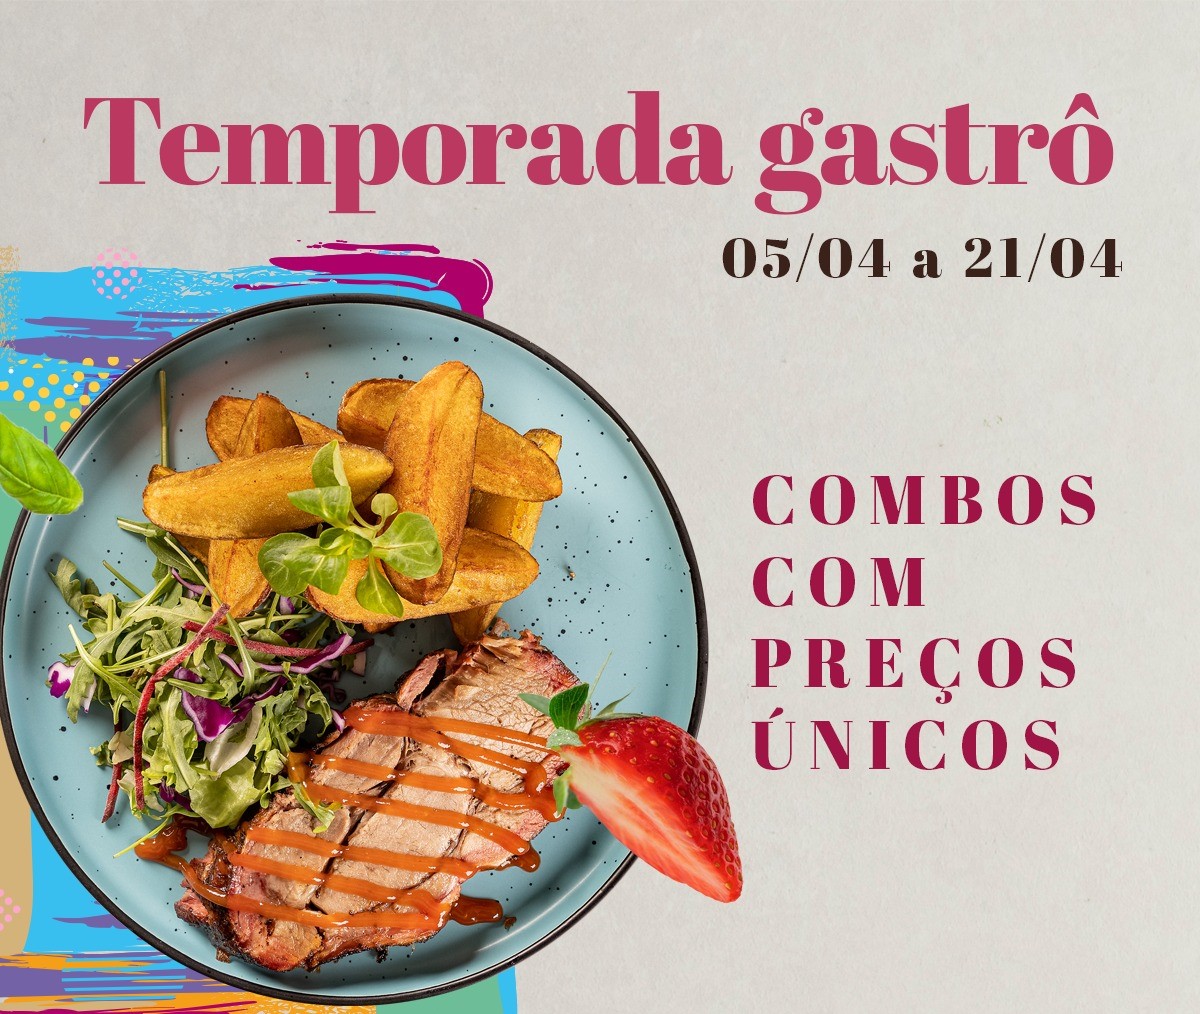 Shopping Metrô Tucuruvi prepara a primeira edição da “Temporada Gastrô”